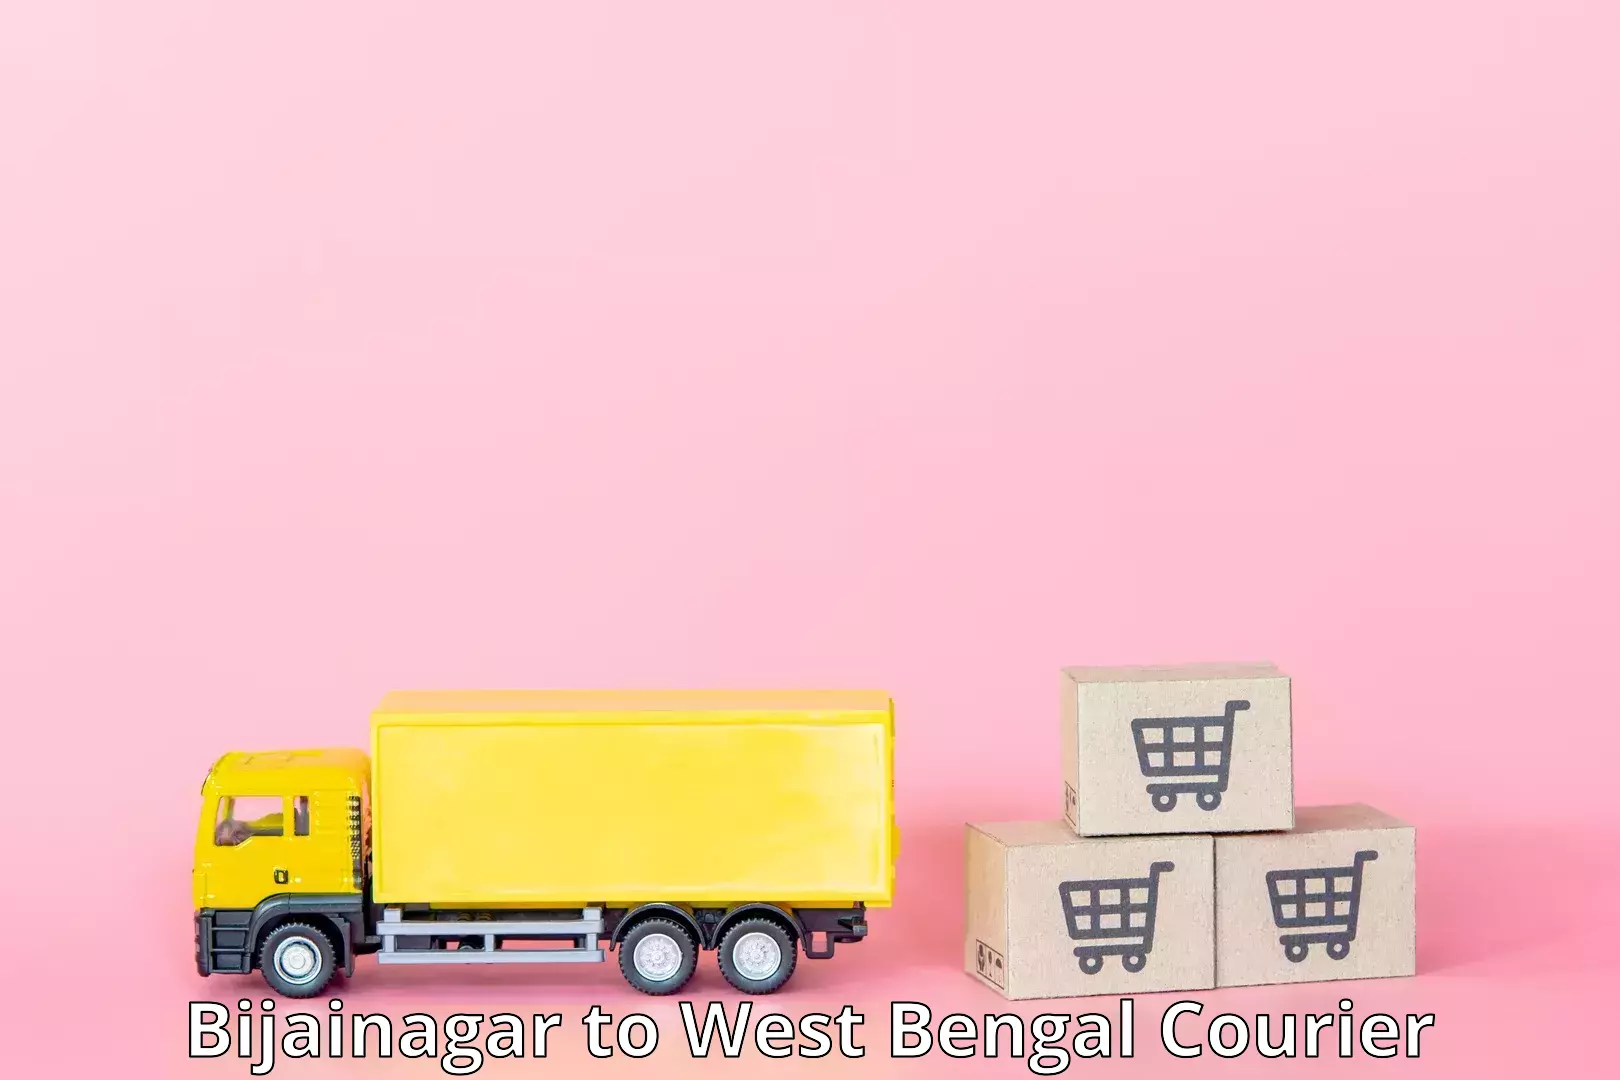 Global logistics network Bijainagar to West Bengal